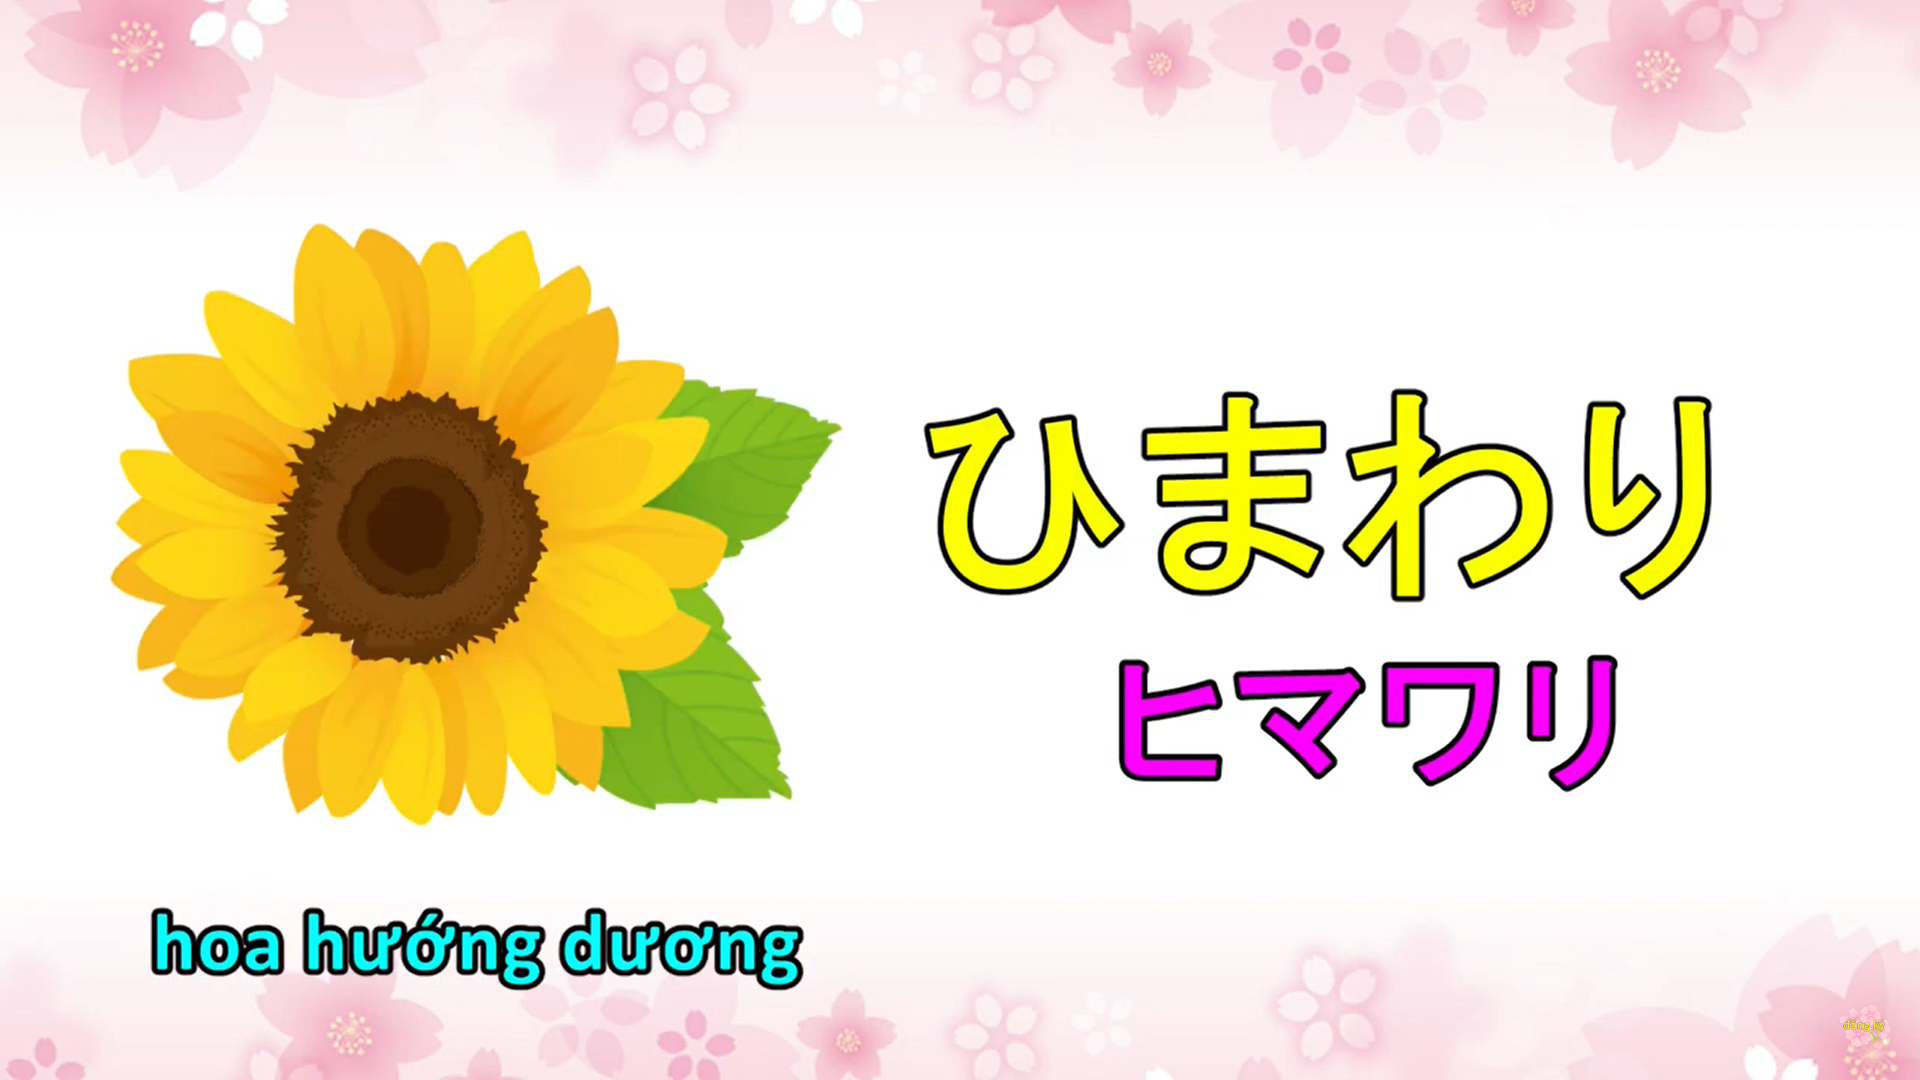 Từ vựng tiếng Nhật về hoa